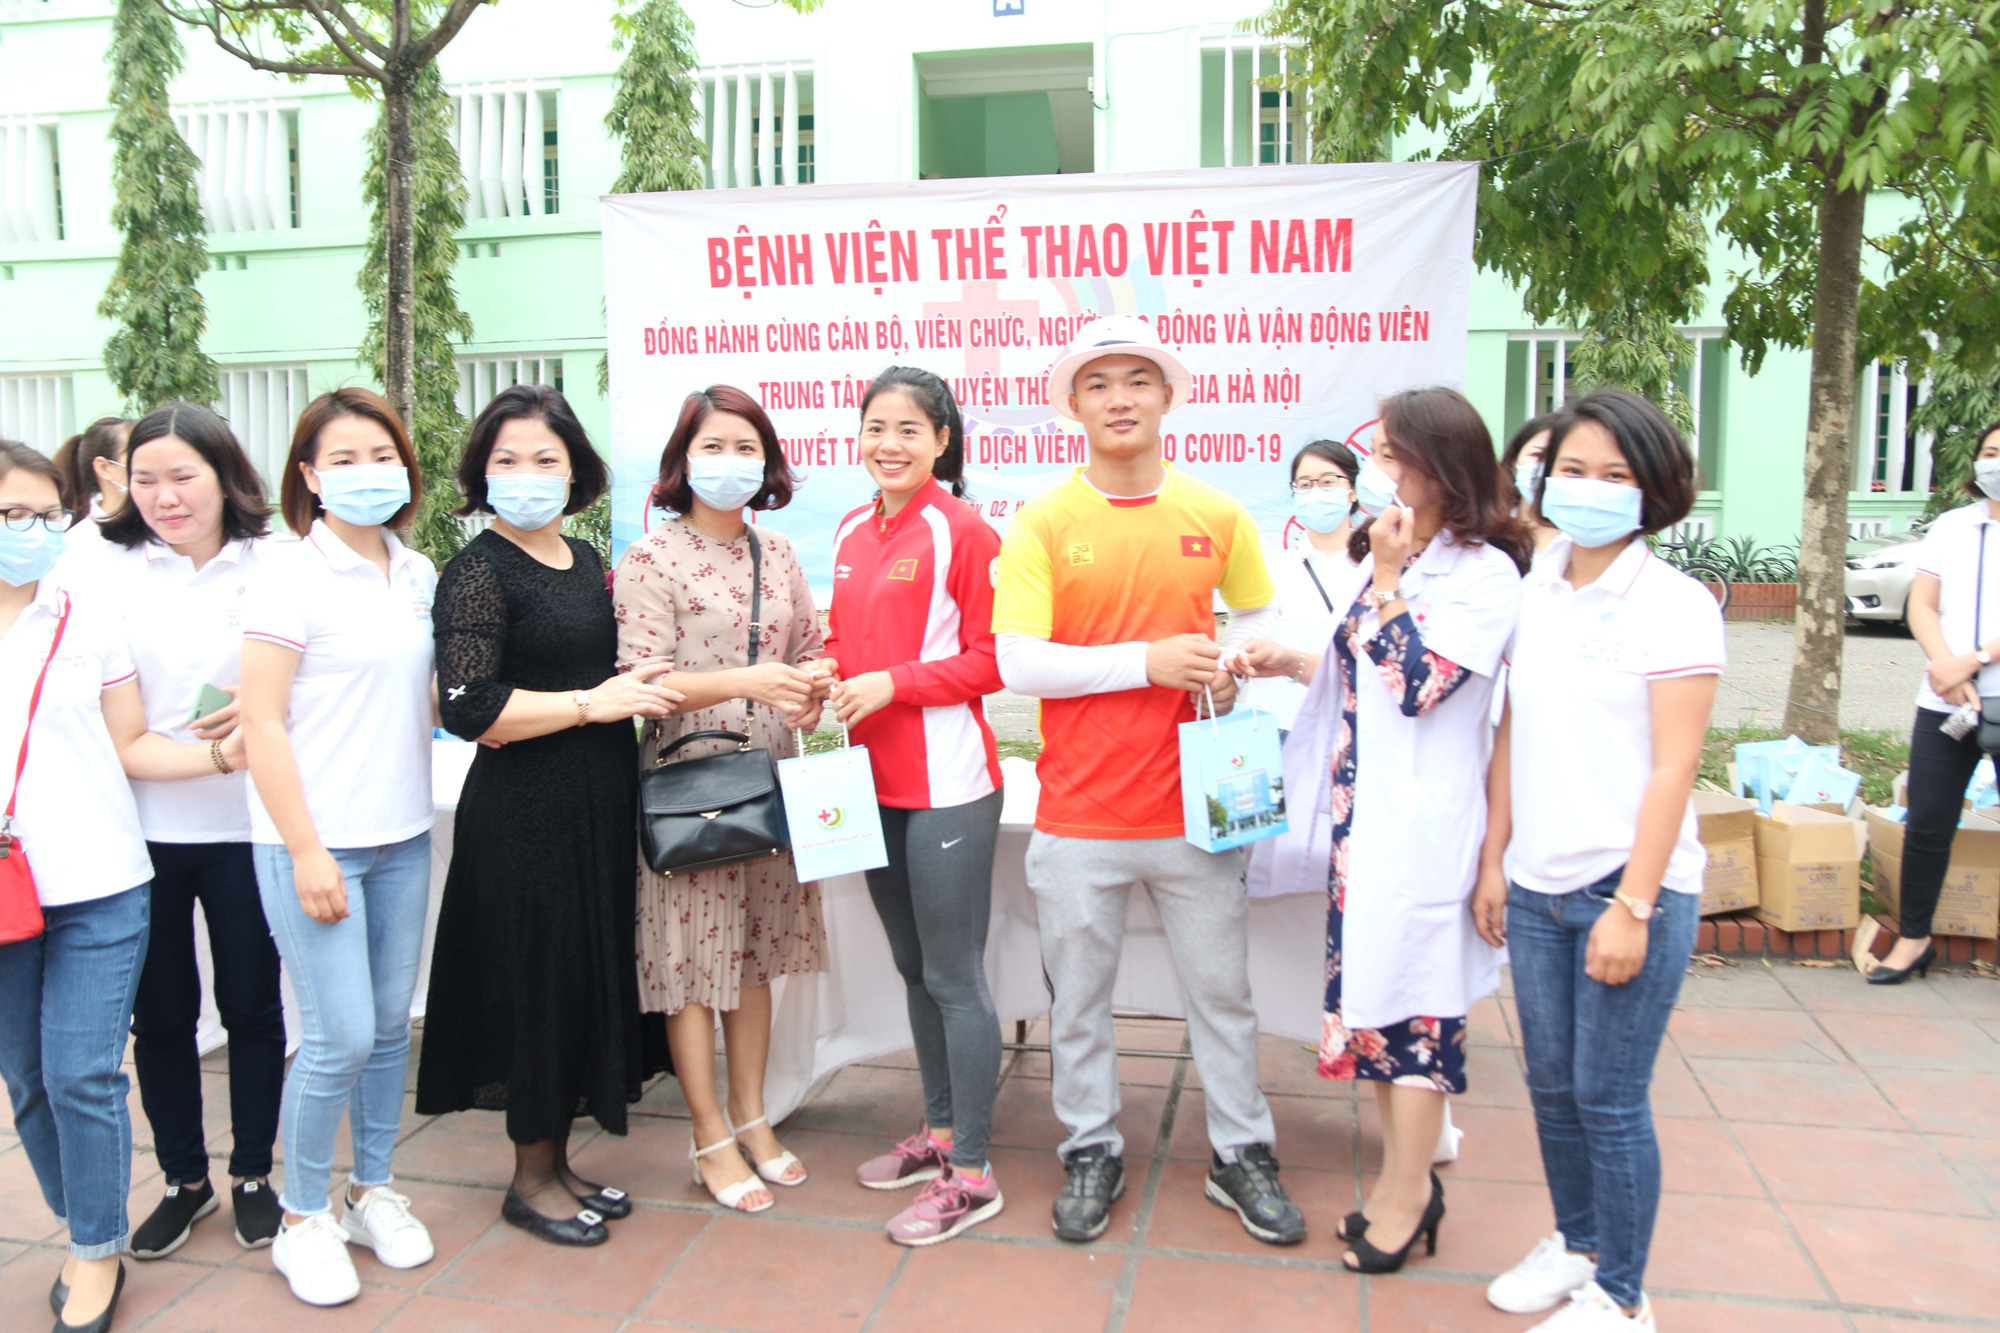 Bệnh viện Thể thao Việt Nam tăng cường phòng, chống Covid-19 trong thời điểm các đội tuyển tập trung - Ảnh 2.